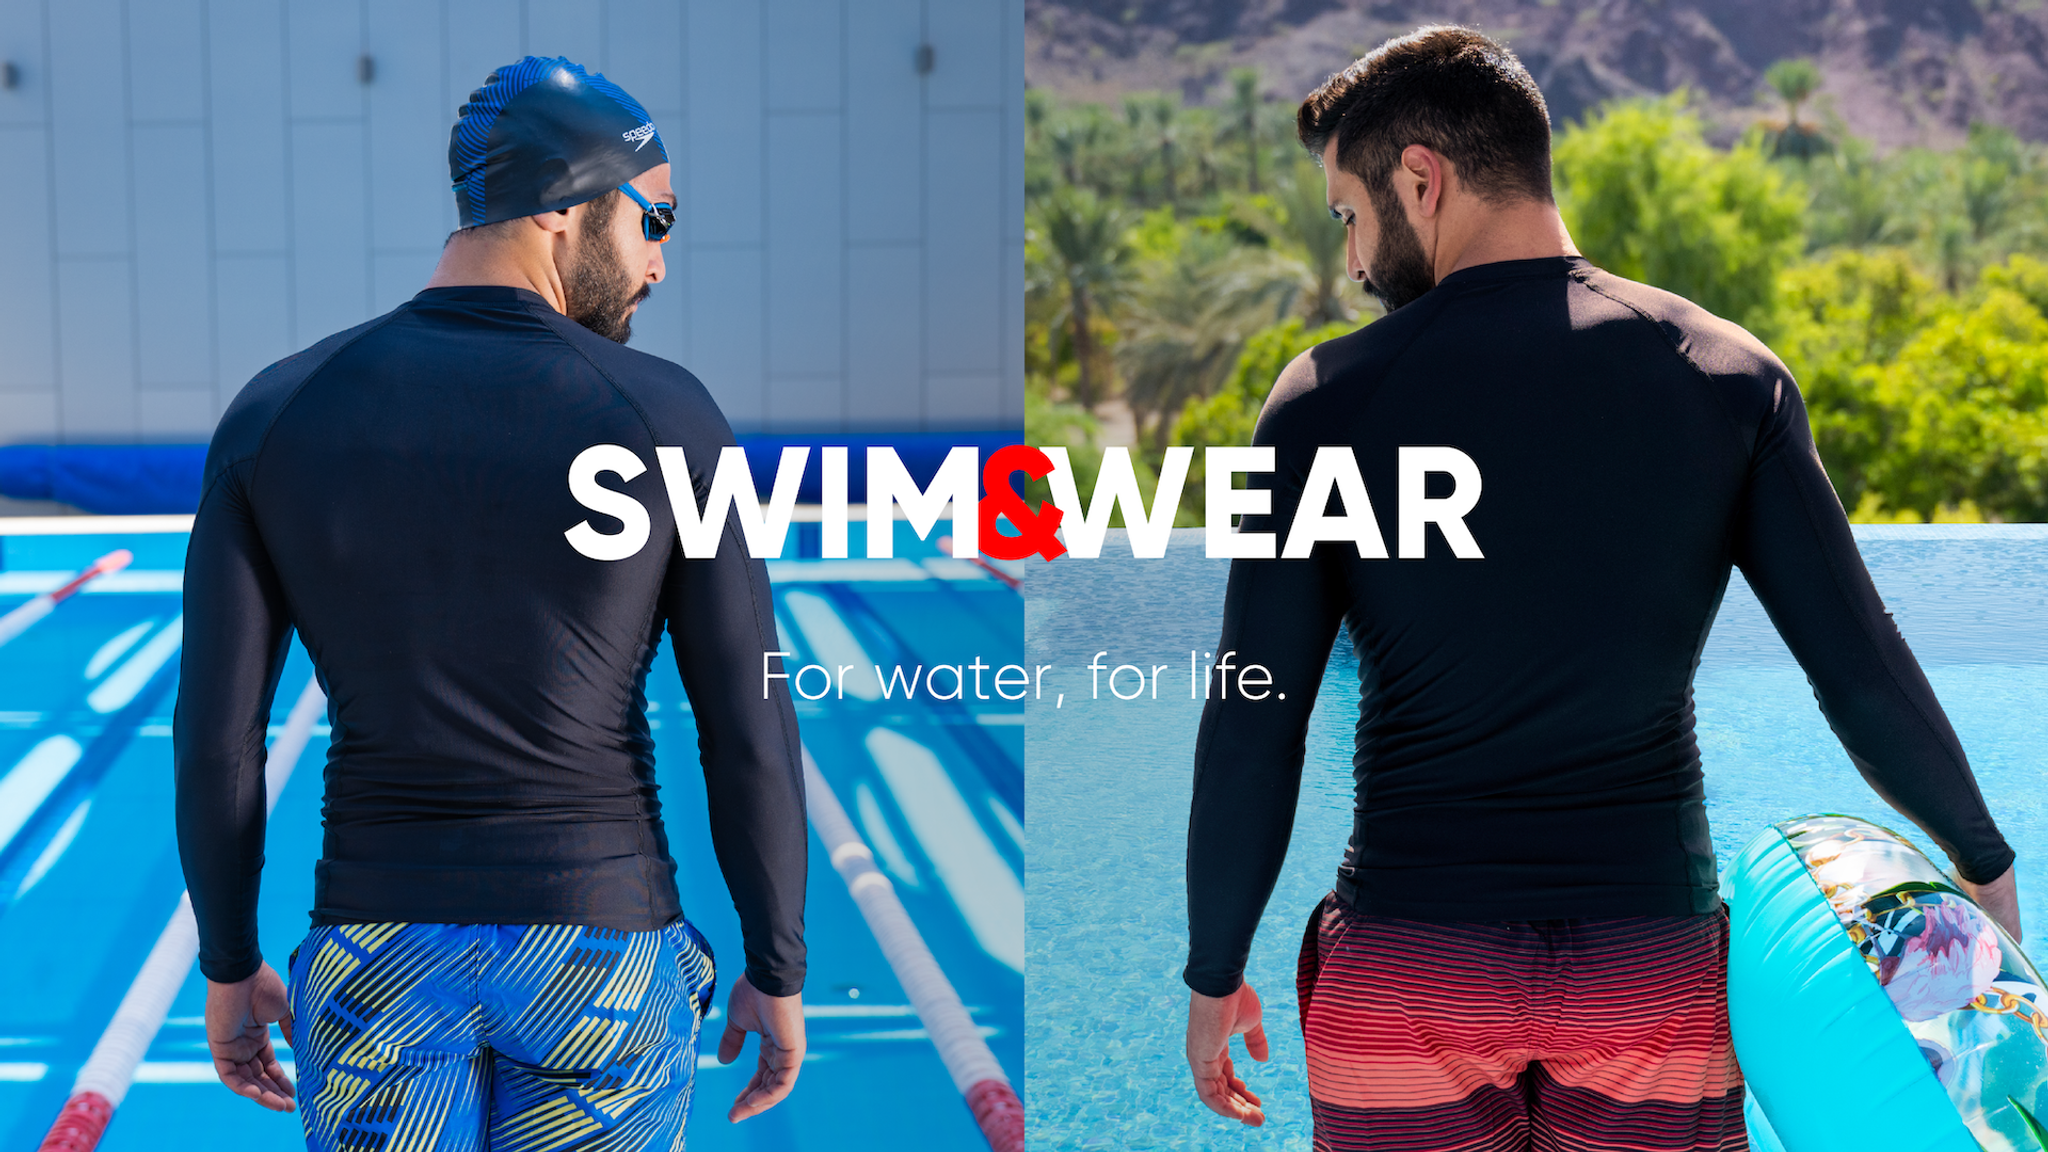  SPEEDO Swim & Wear